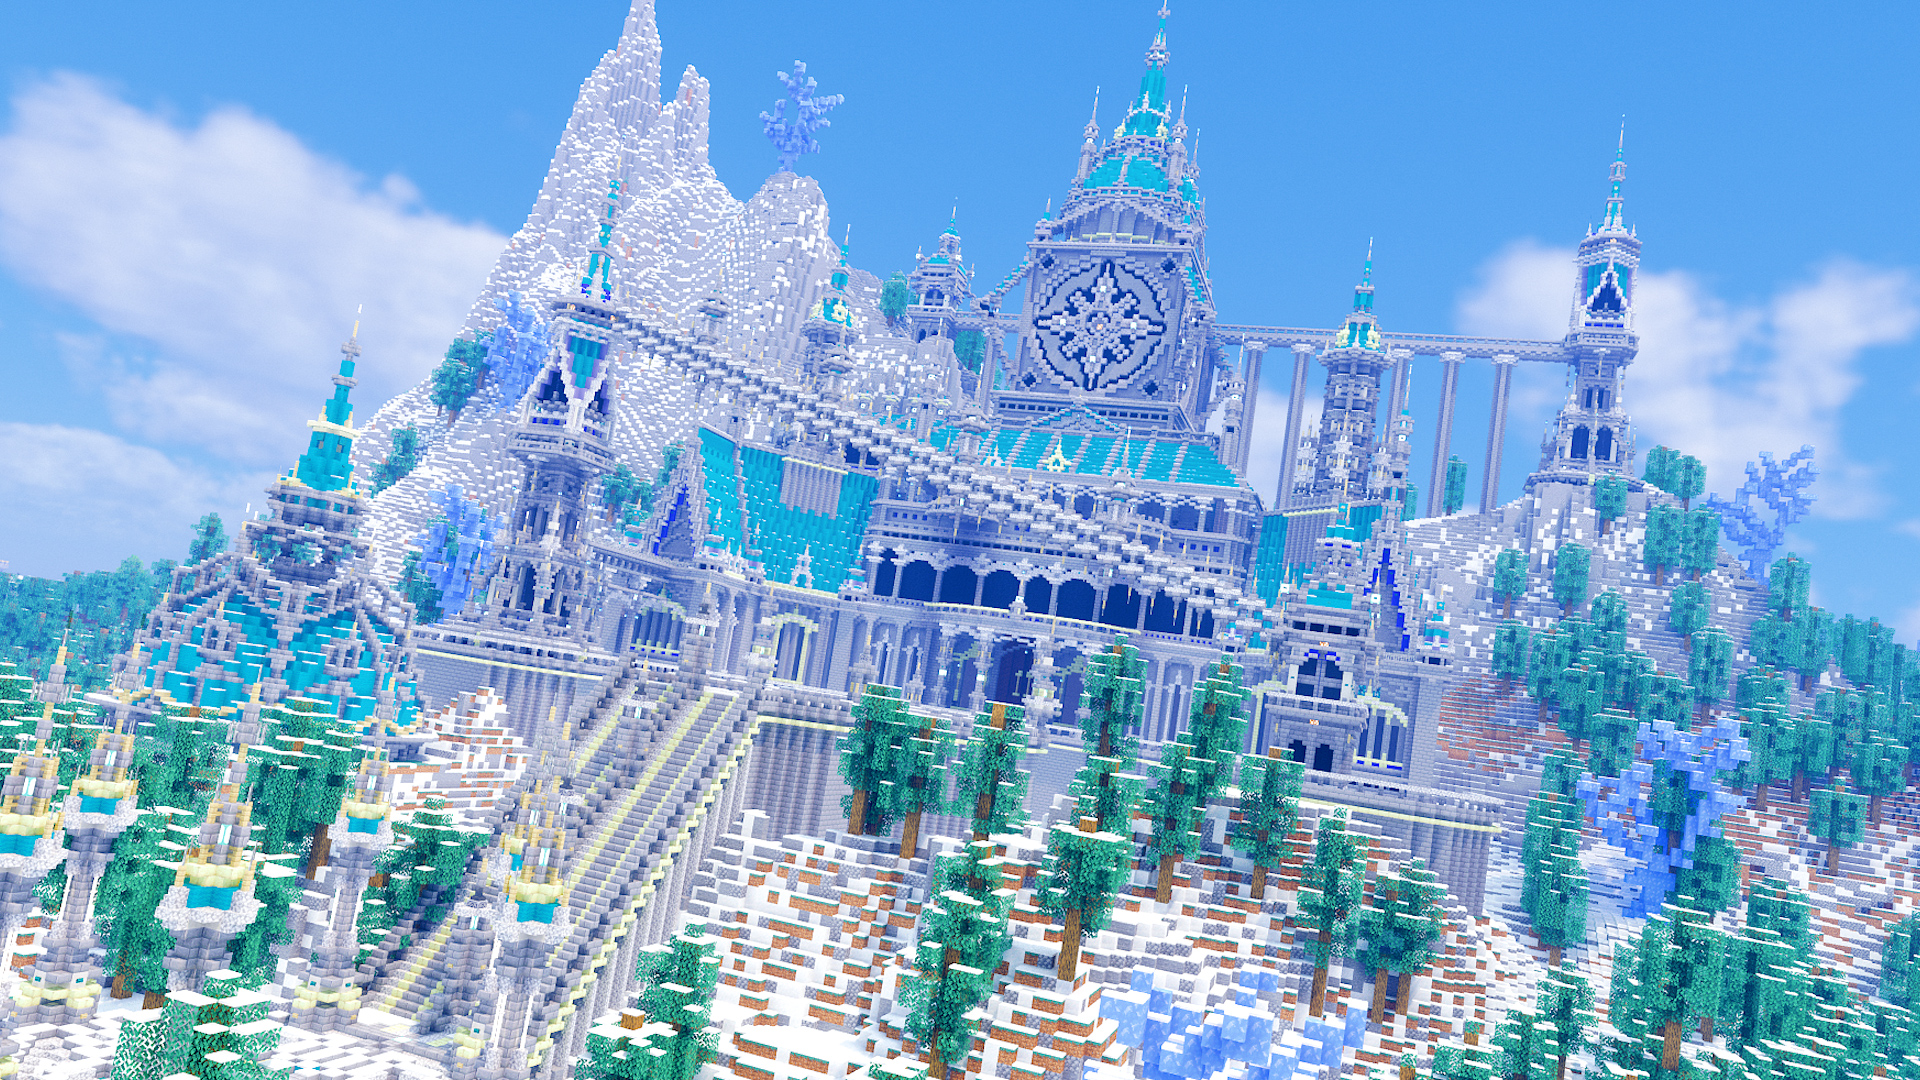 らーなろっそ 雪山にお城作りました 最近暑いし 気分だけでも涼しく T Co Qpqhug8yqh Minecraft マイクラ Minecraft建築コミュ マイクラ建築 Minecraftbuilds バニラ建築学部 T Co Ucfdw15wxs Twitter